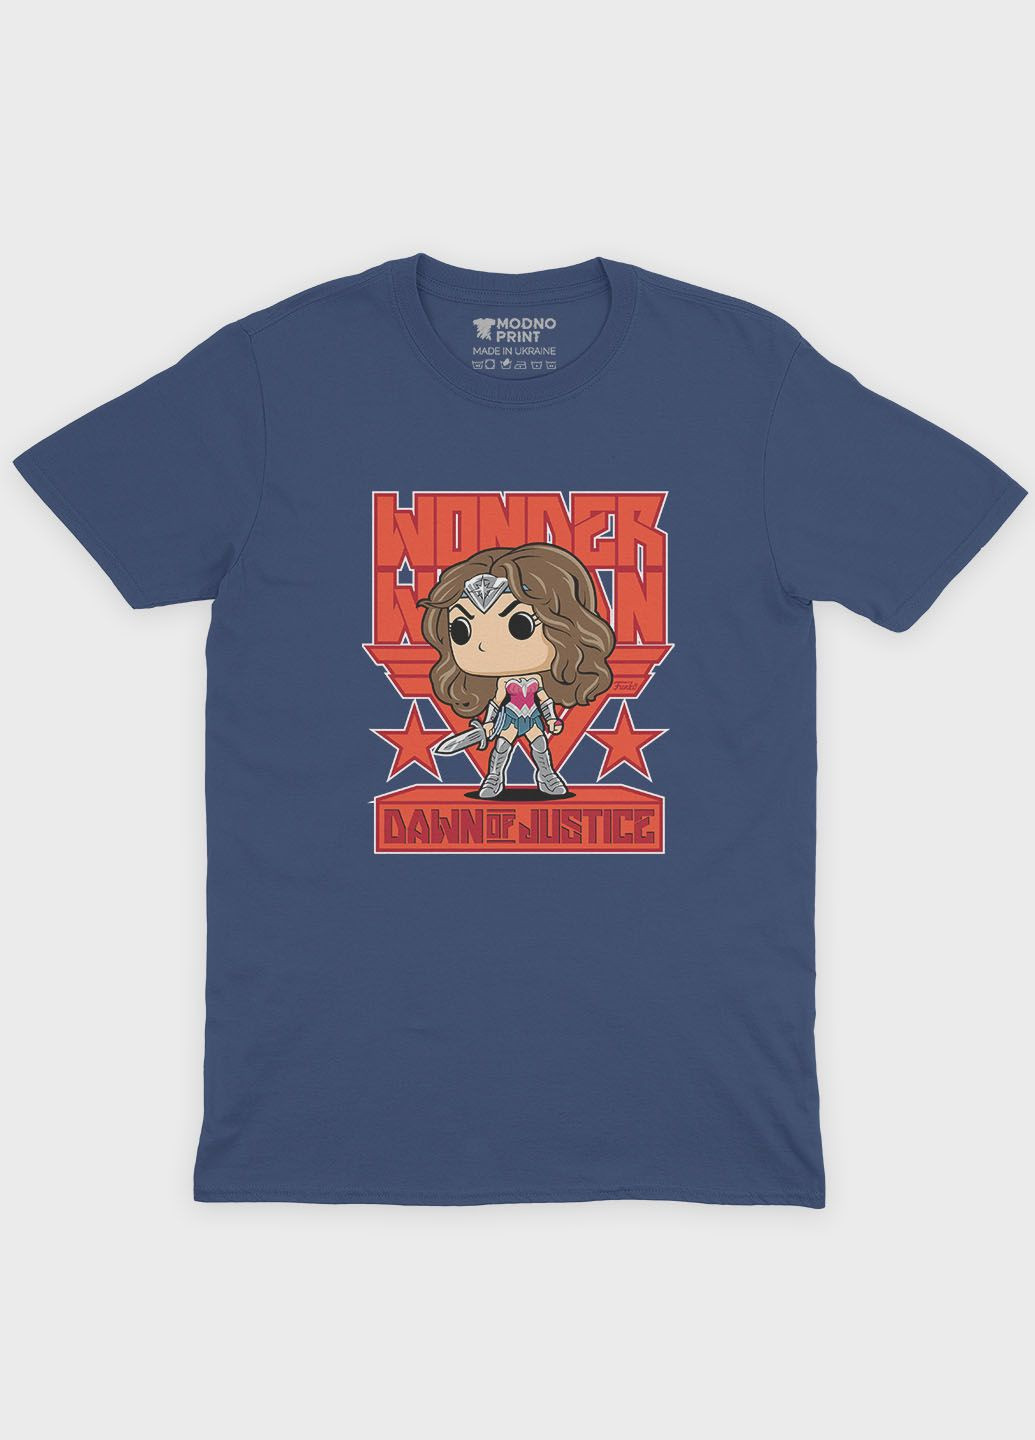 Темно-синя демісезонна футболка для хлопчика з принтом супергероя - диво-жінка (ts001-1-nav-006-006-002-b) Modno